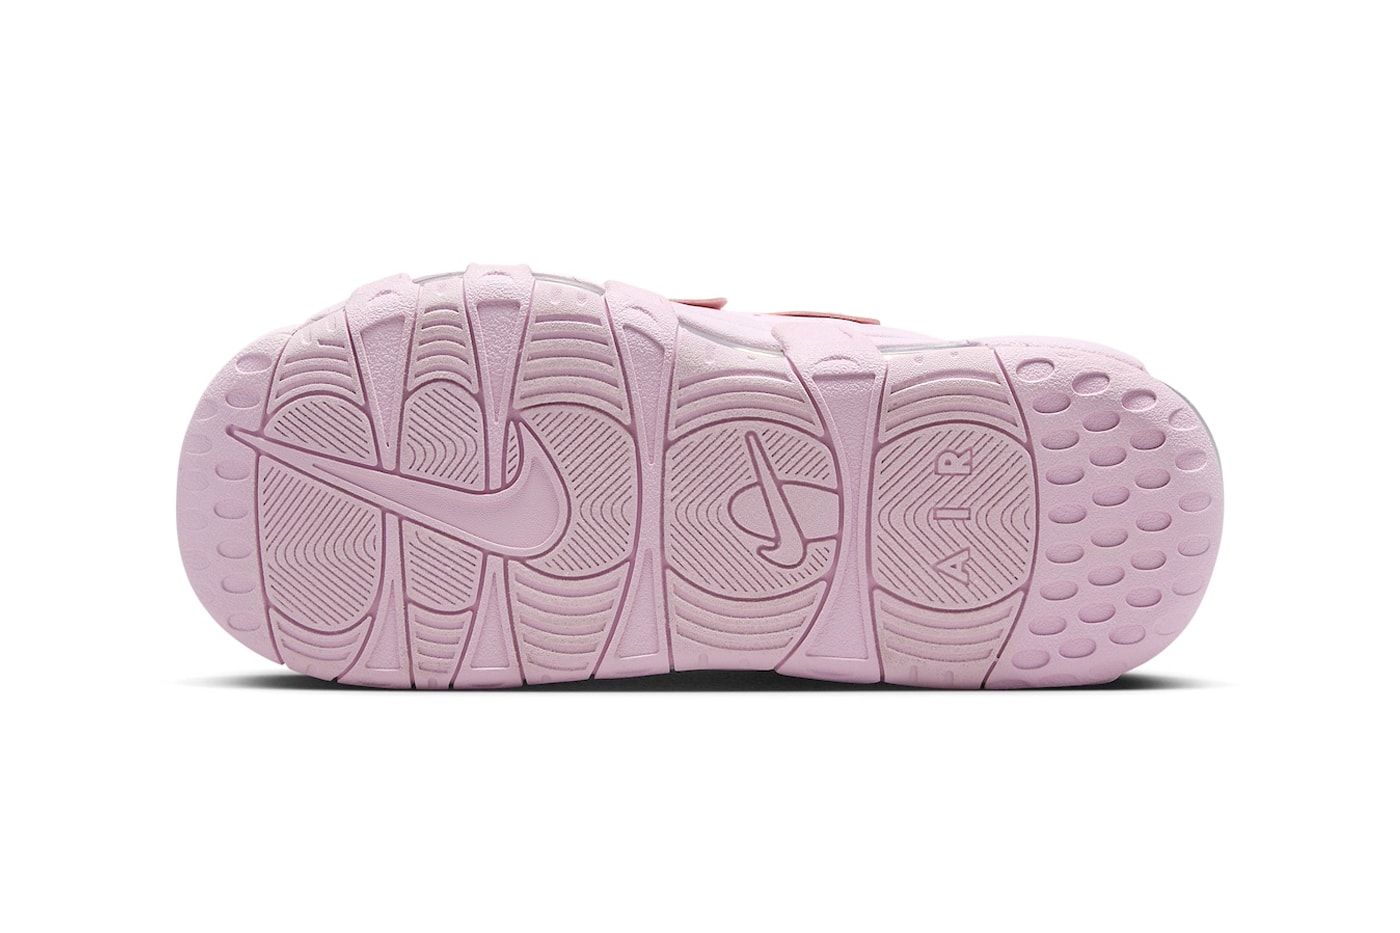 ナイキから桜の花びらを彷彿とさせるエアモアアップテンポスライド “ピンクフォーム”が登場 Nike Air More Uptempo Slide Arrives in "Pink" FJ2597-600 sandals ambushretro mx calm slides 